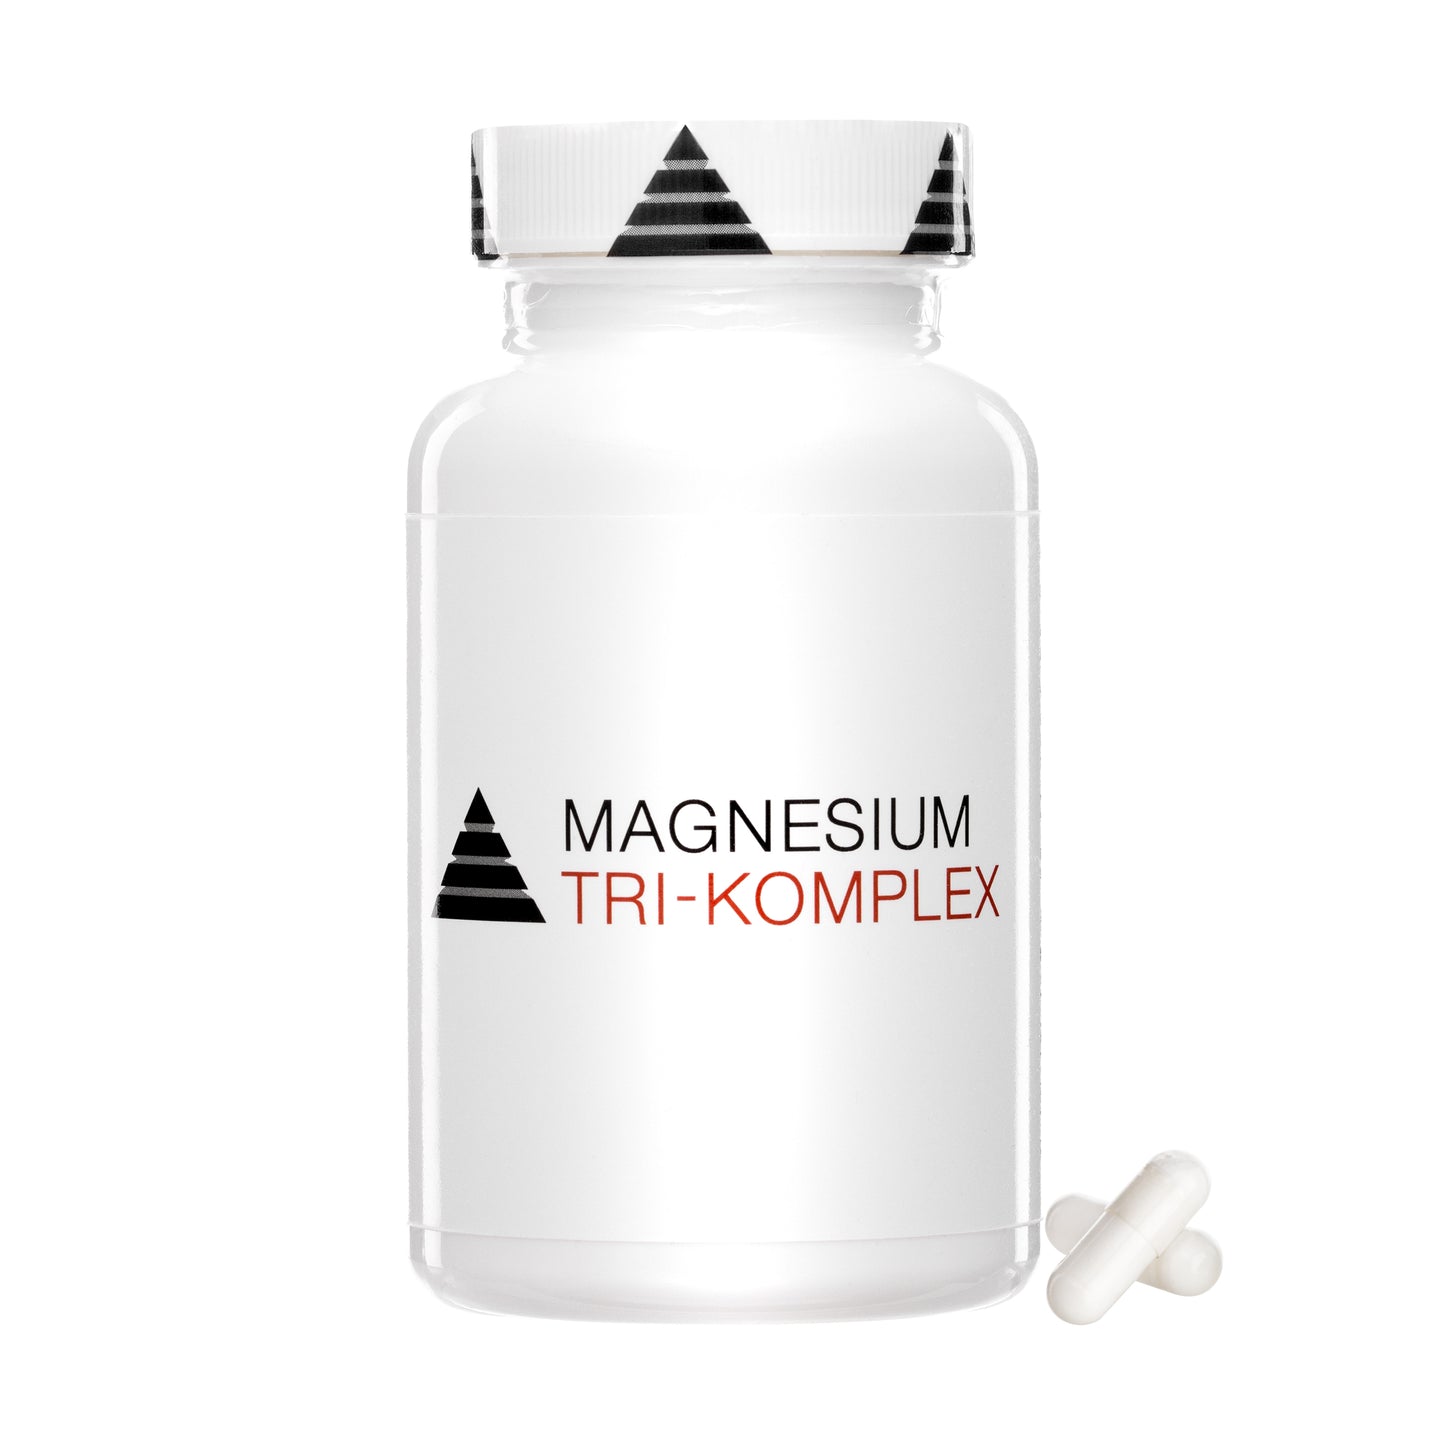 YPSI Magnesium Tri-Komplex